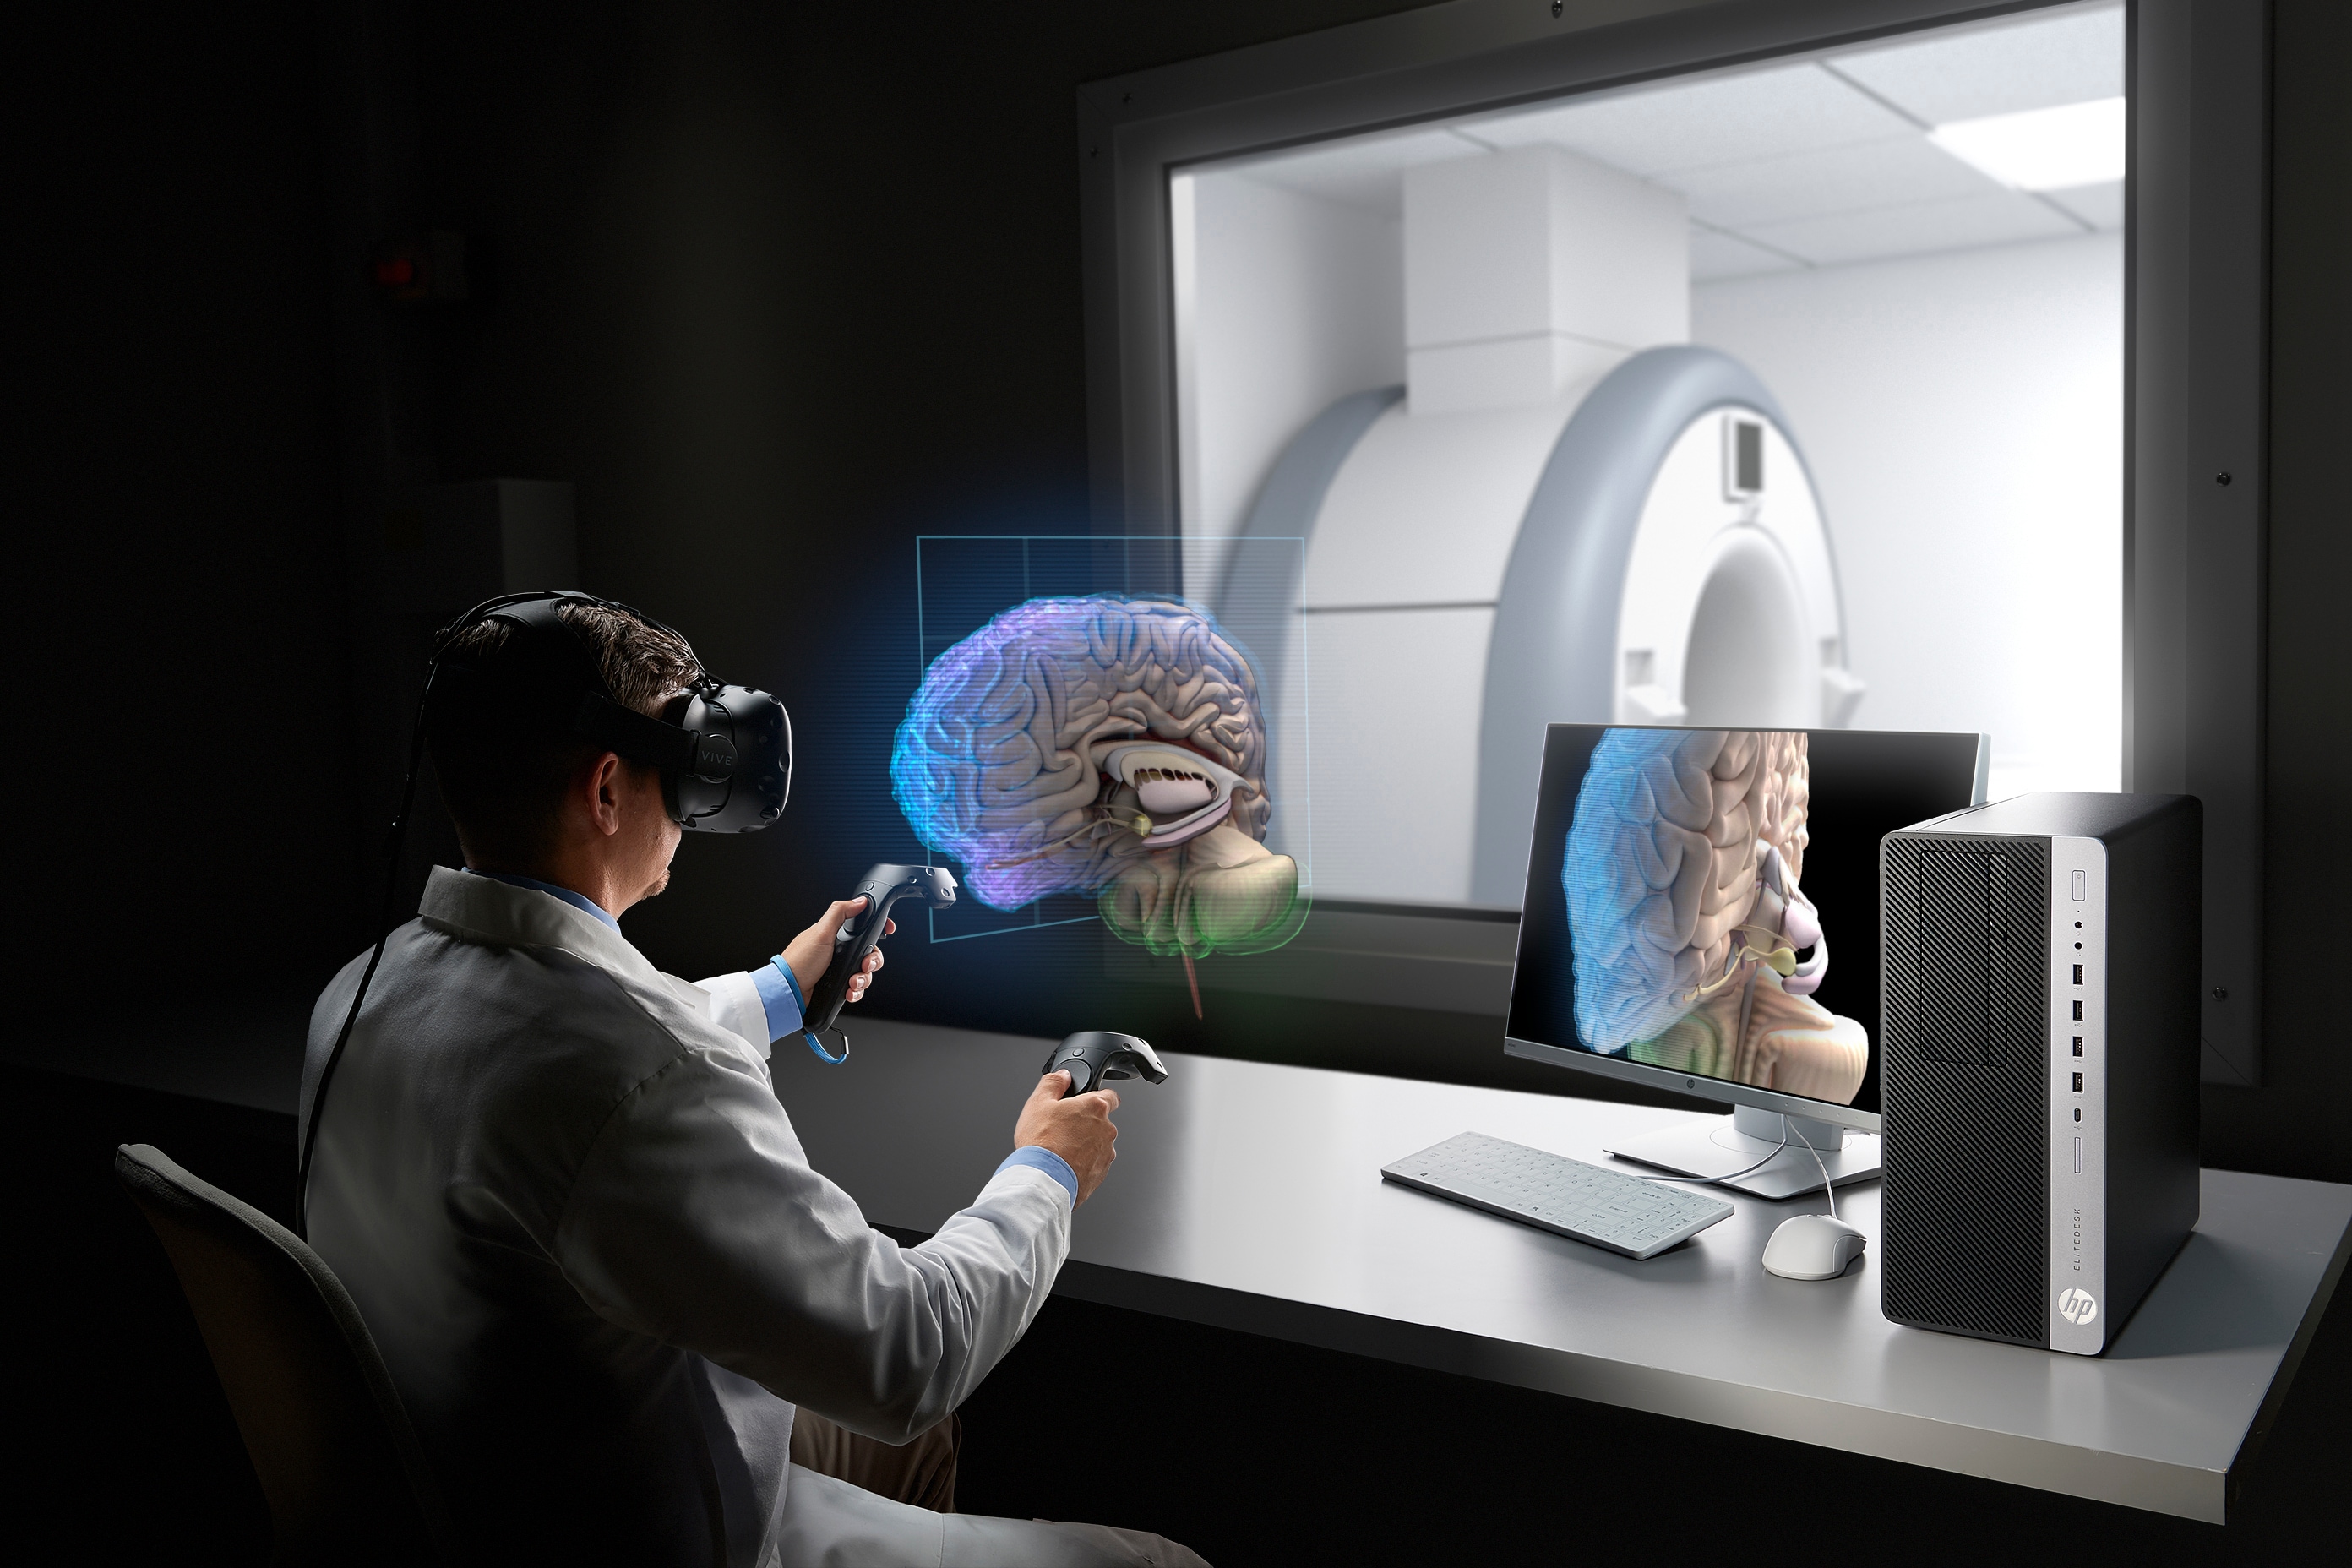 Vr объект. Технология дополненной реальности. Технологии виртуальной и дополненной реальности. VR И ar технологии. Технологии дополненной реальности в медицине.